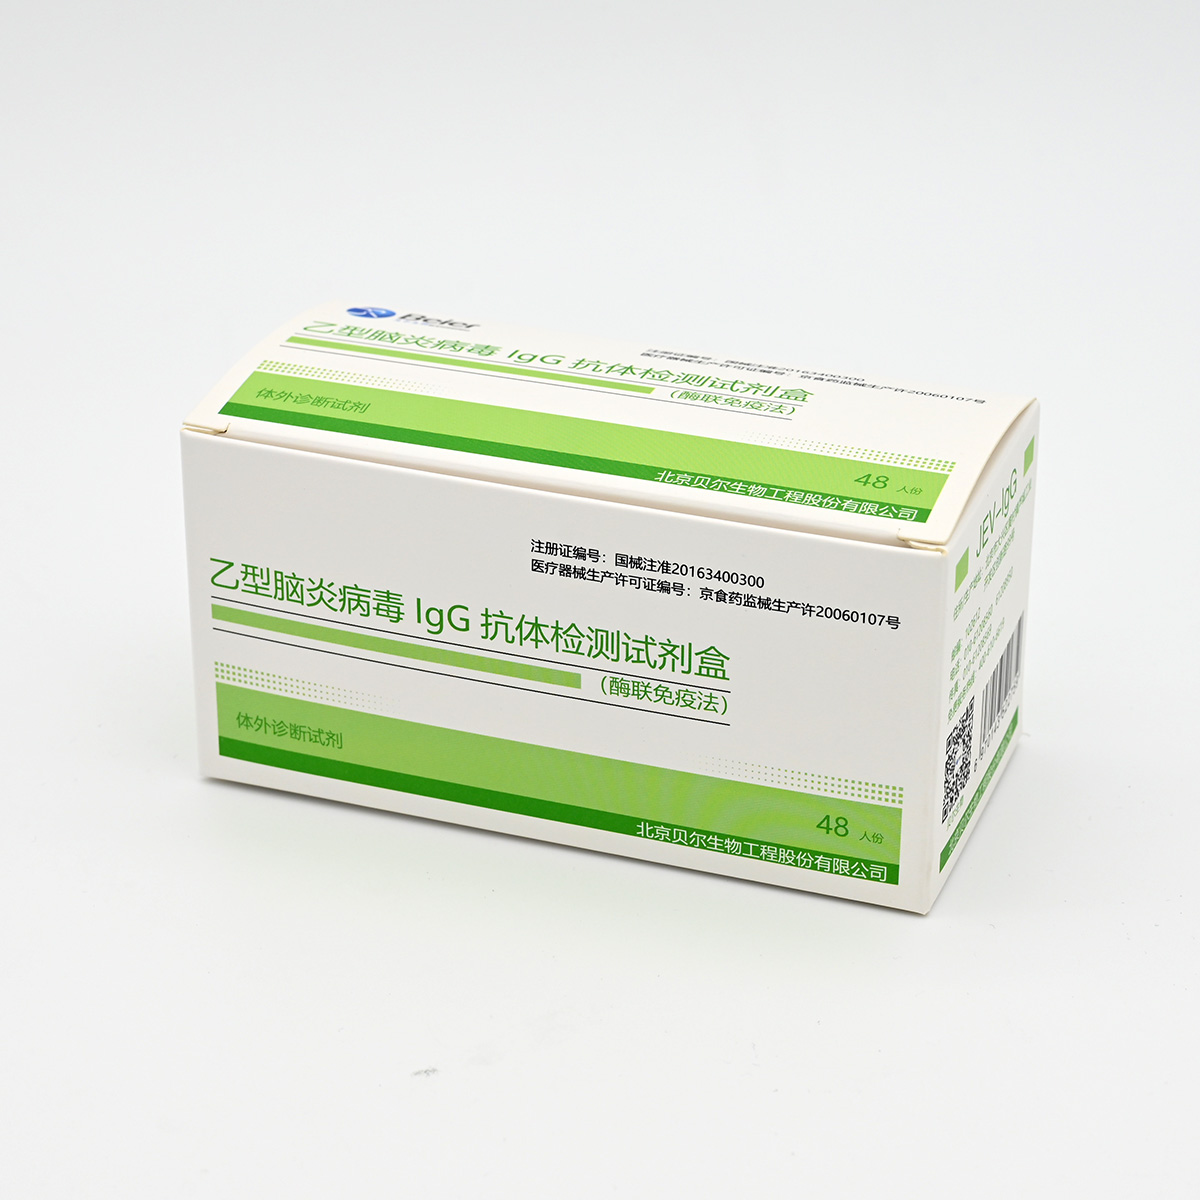 【贝尔】乙型脑炎病毒IgG抗体检测试剂盒(酶联免疫法)